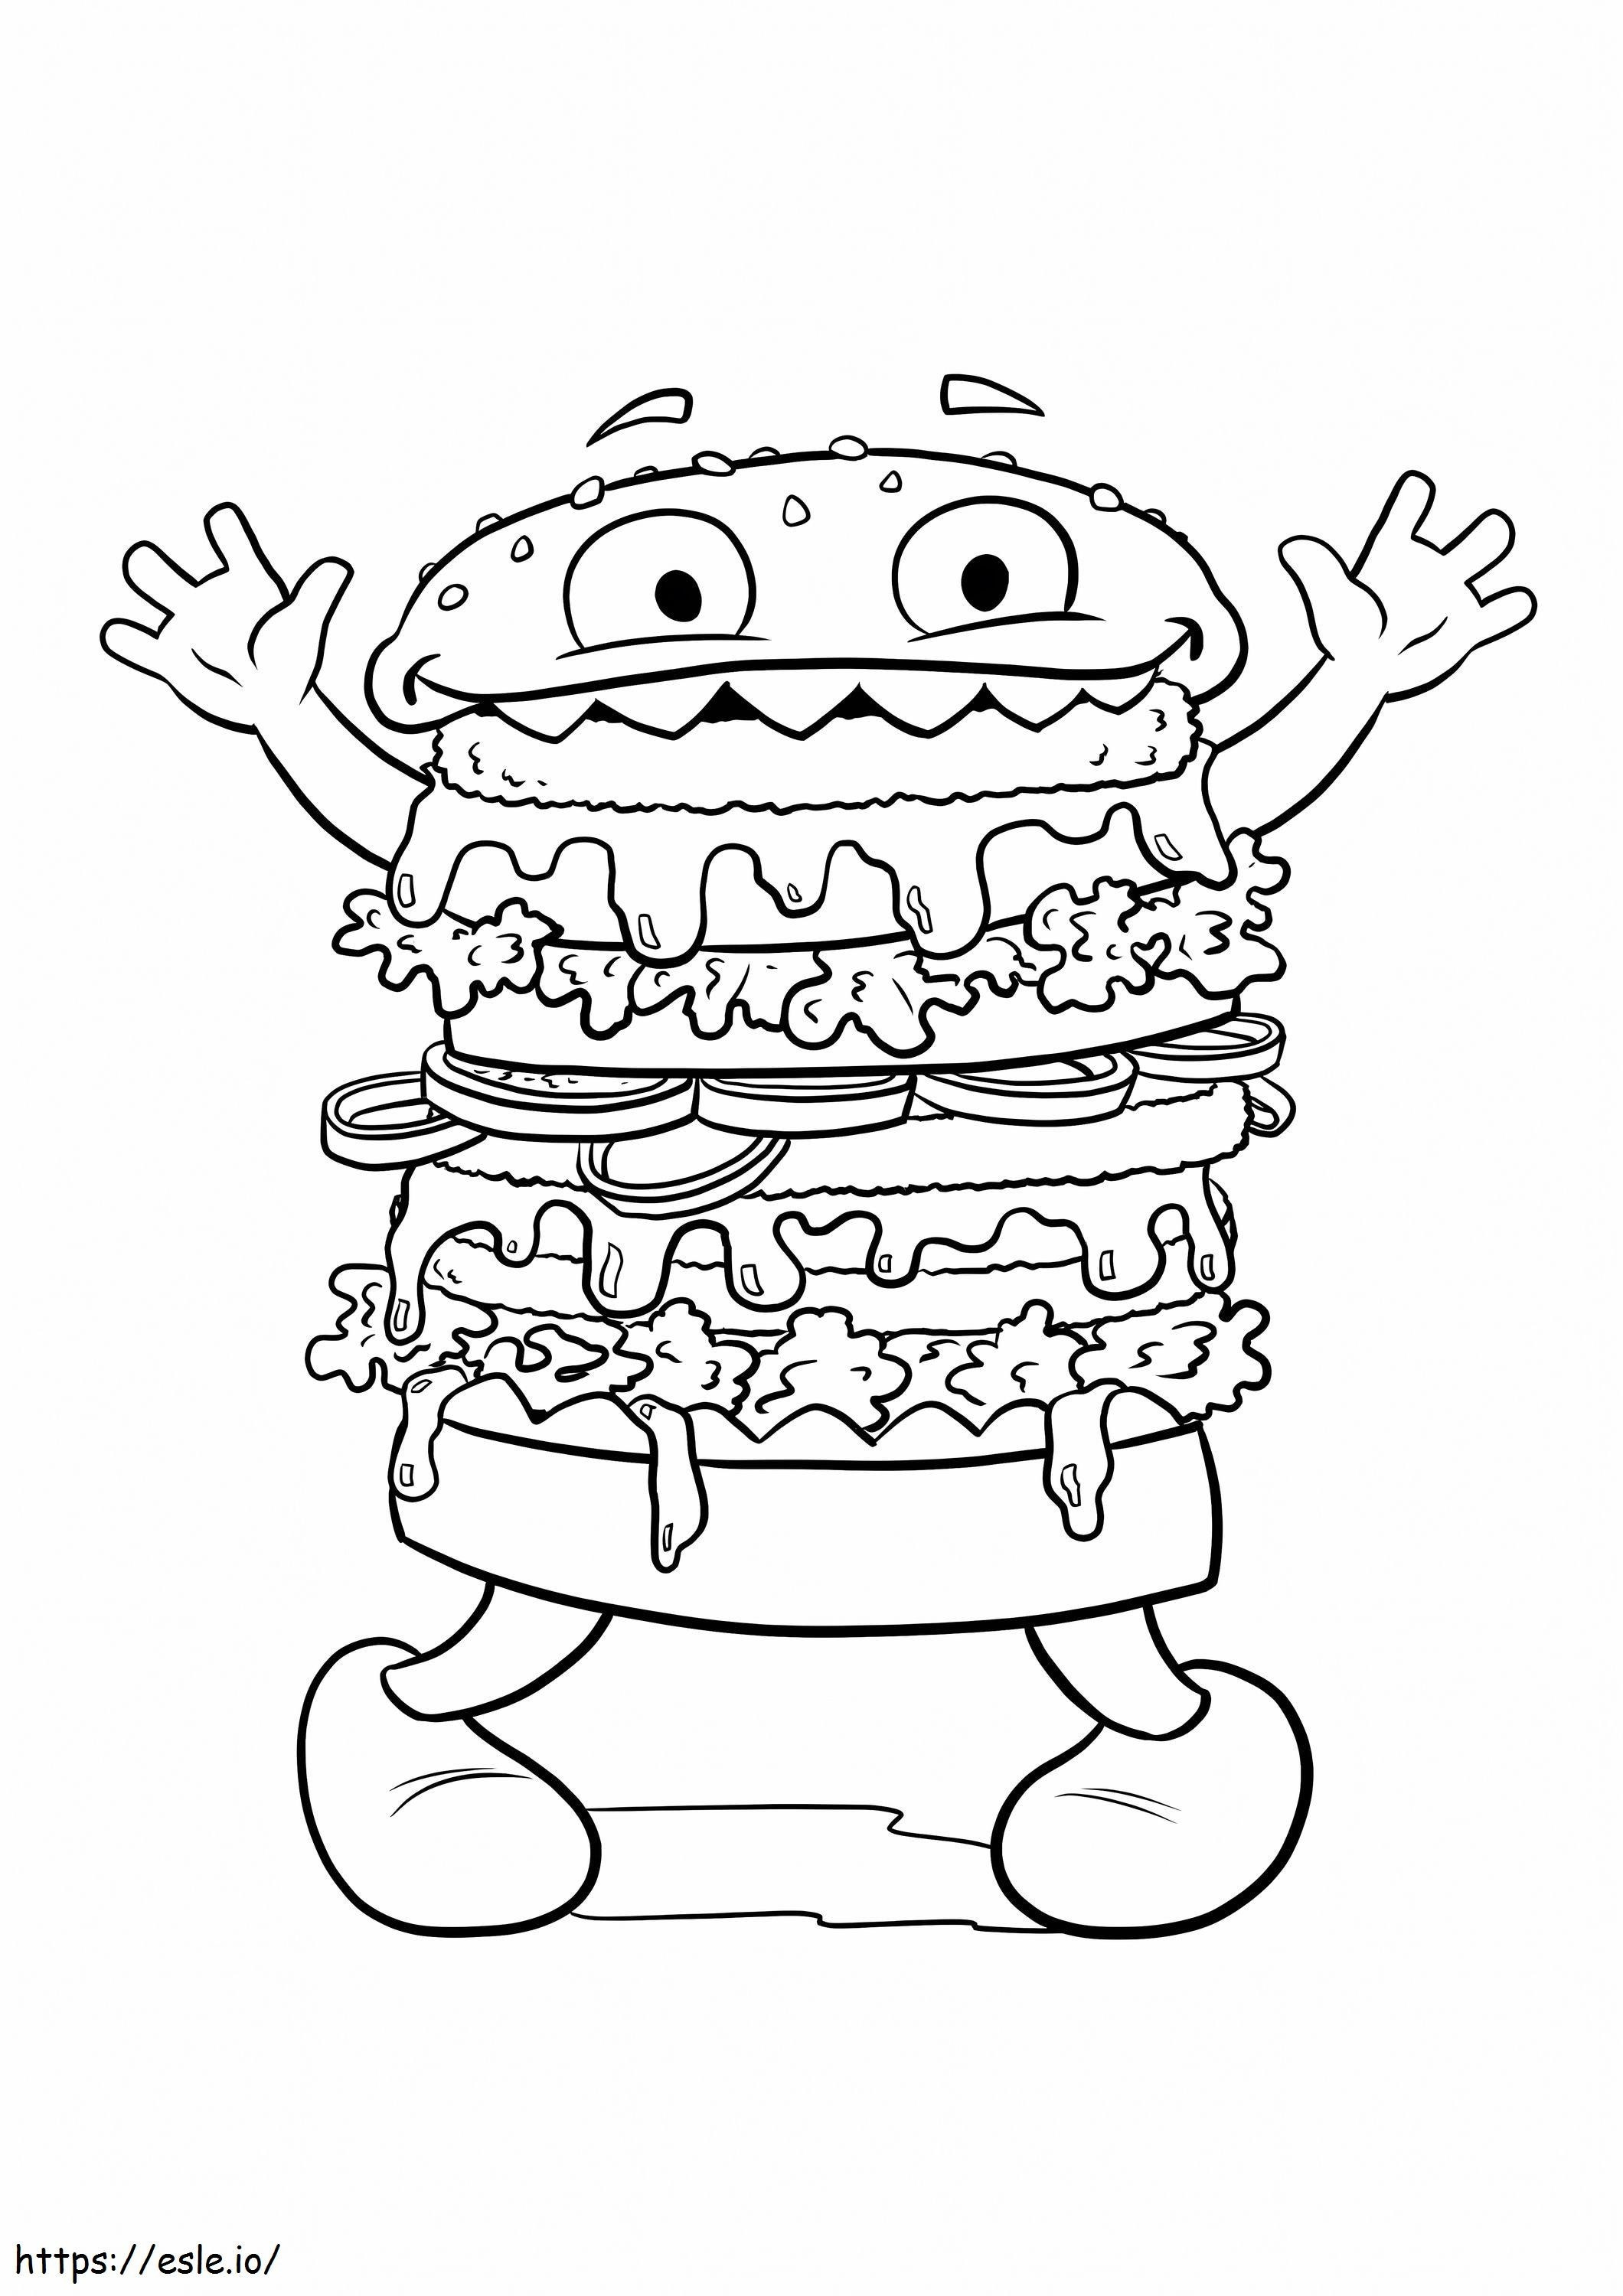 Dummes Hamburger-Monster ausmalbilder